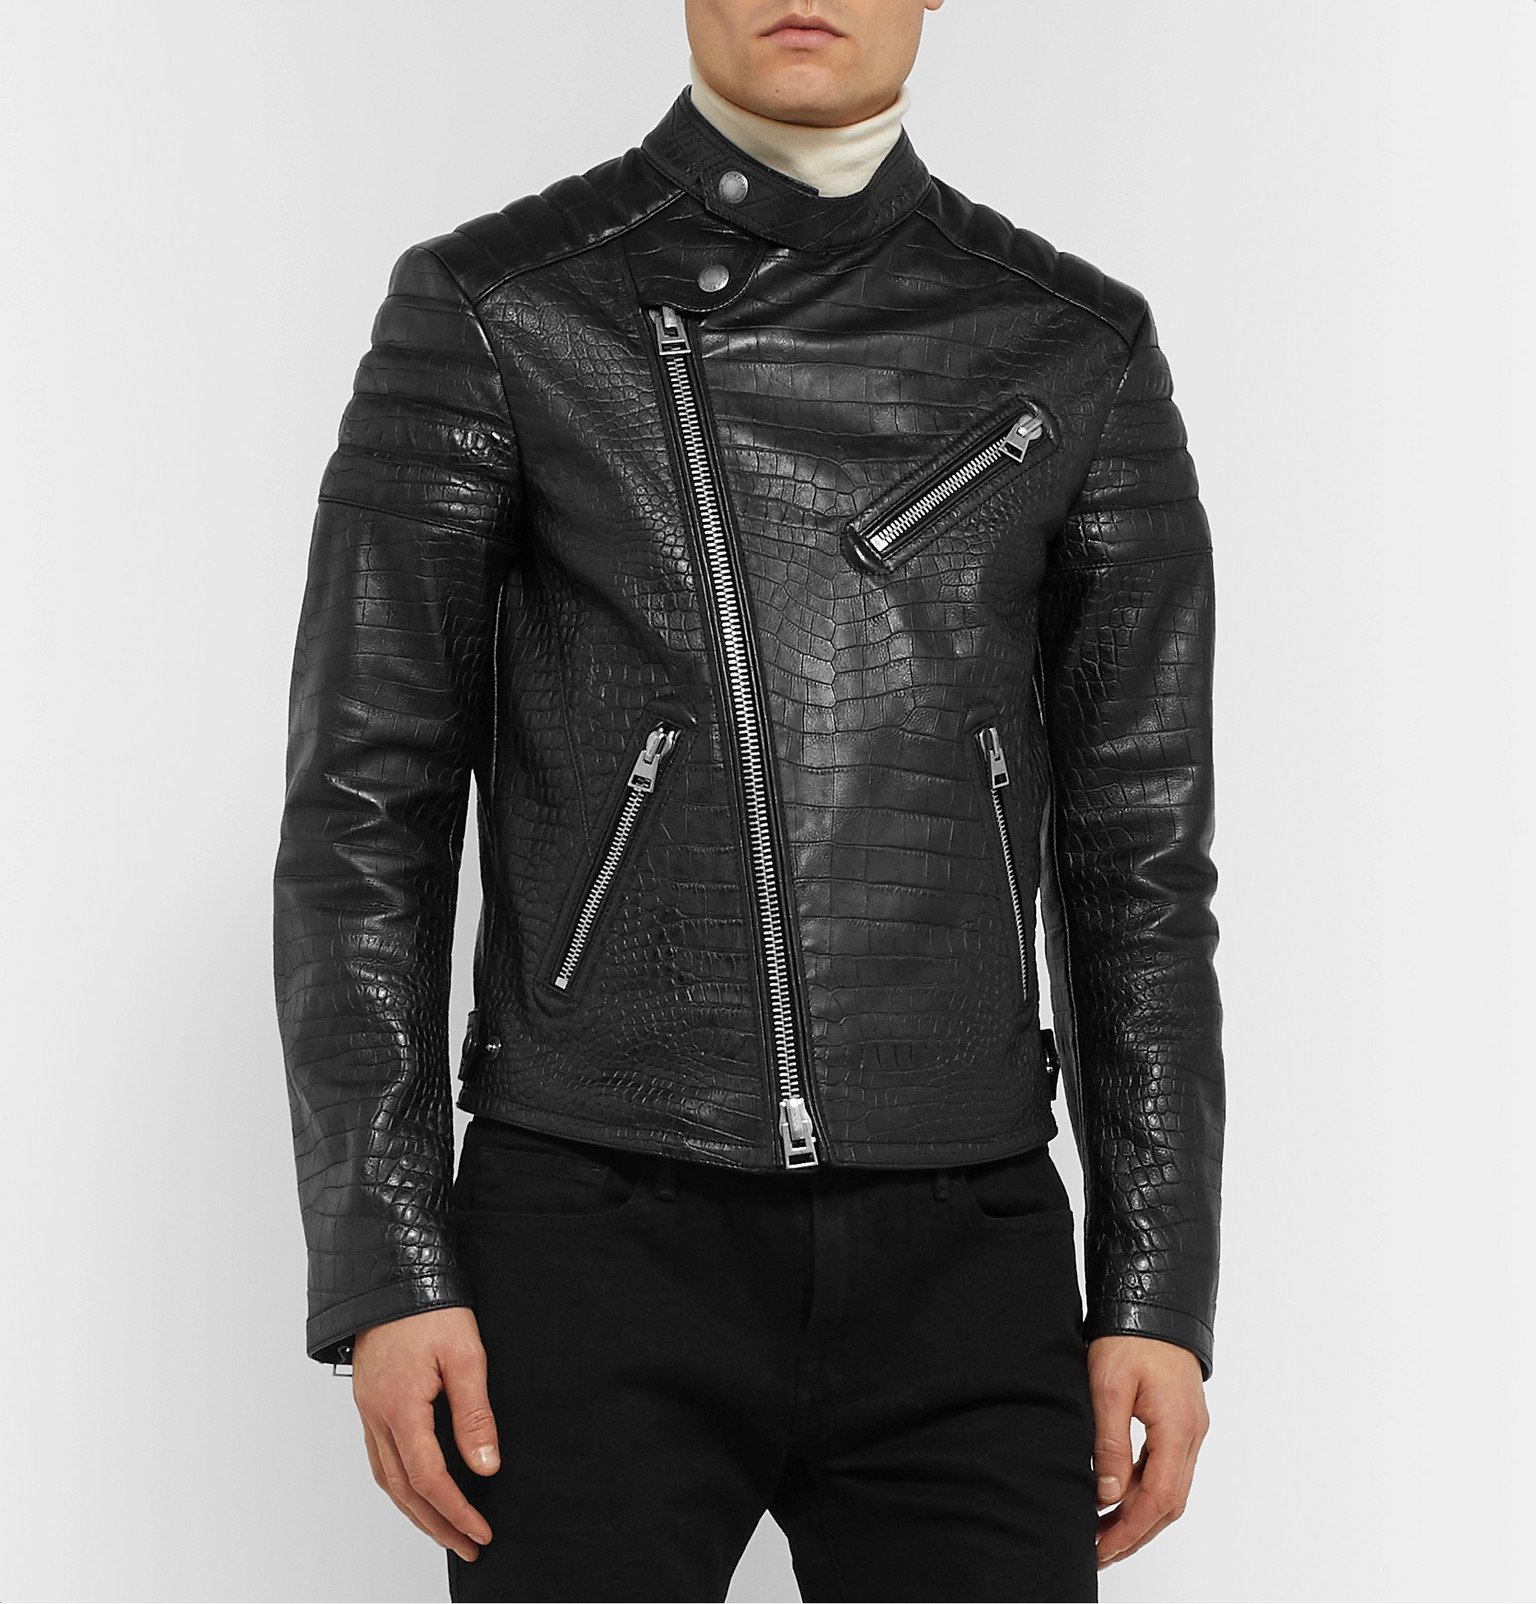 TOM FORD - Slim-Fit Croc-Effect Leather Biker Jacket - Black TOM FORD